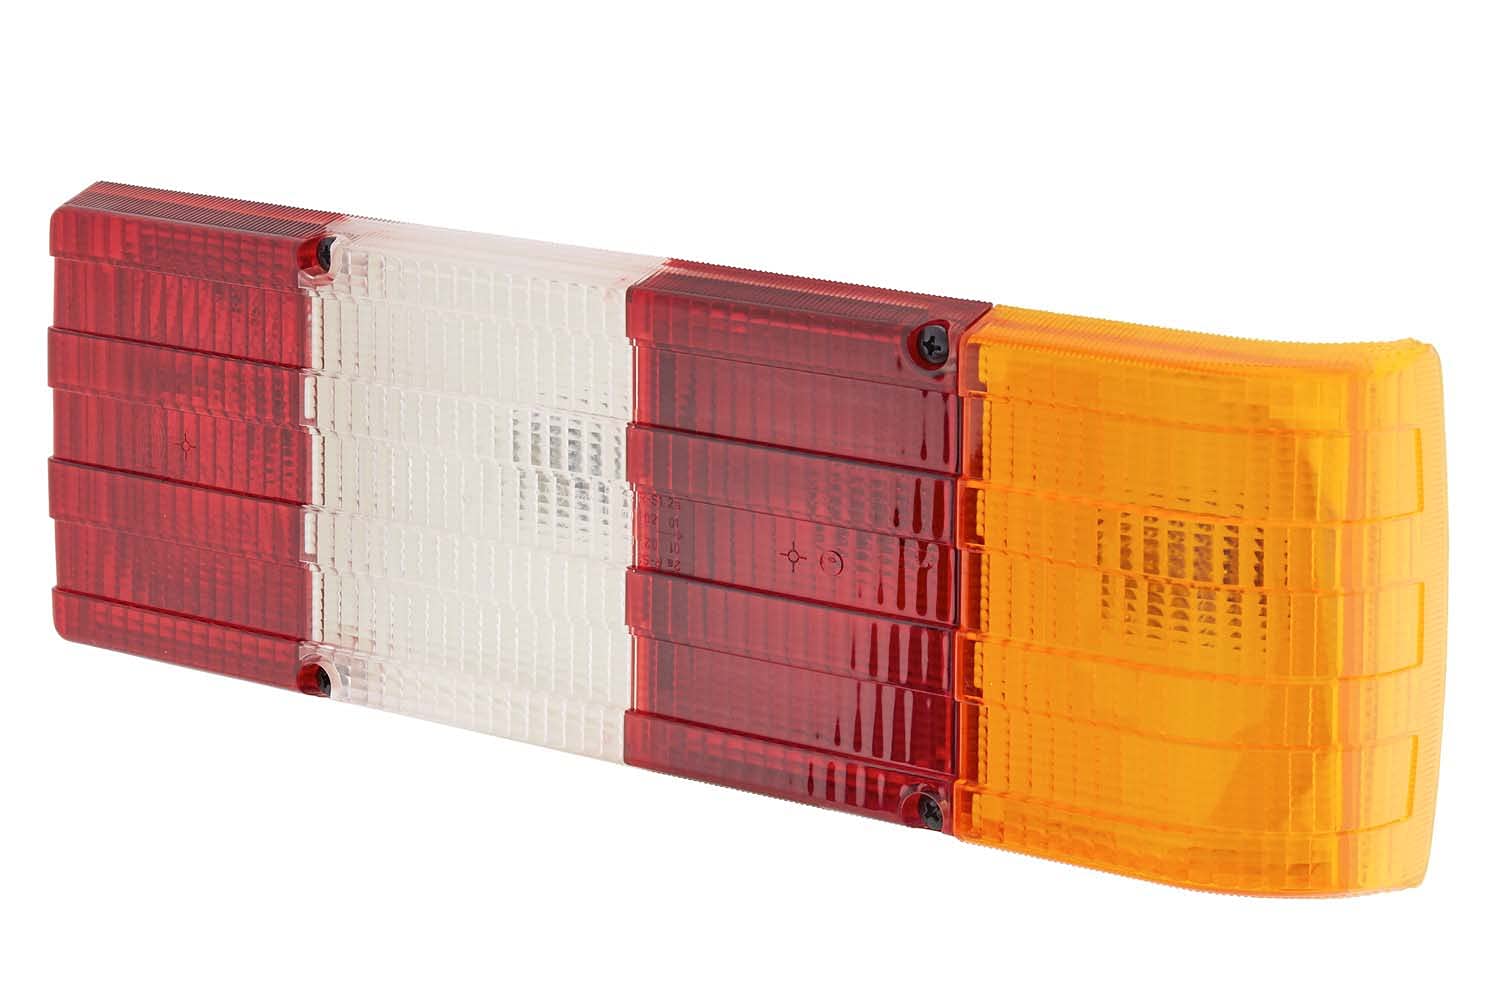 HELLA - Heckleuchte - Glühlampe - 12V - Einbau/geschraubt - Lichtscheibenfarbe: mehrfarbig - Stecker: Flachstecker - rechts/links - Menge: 1 - 2SK 004 460-031 von Hella